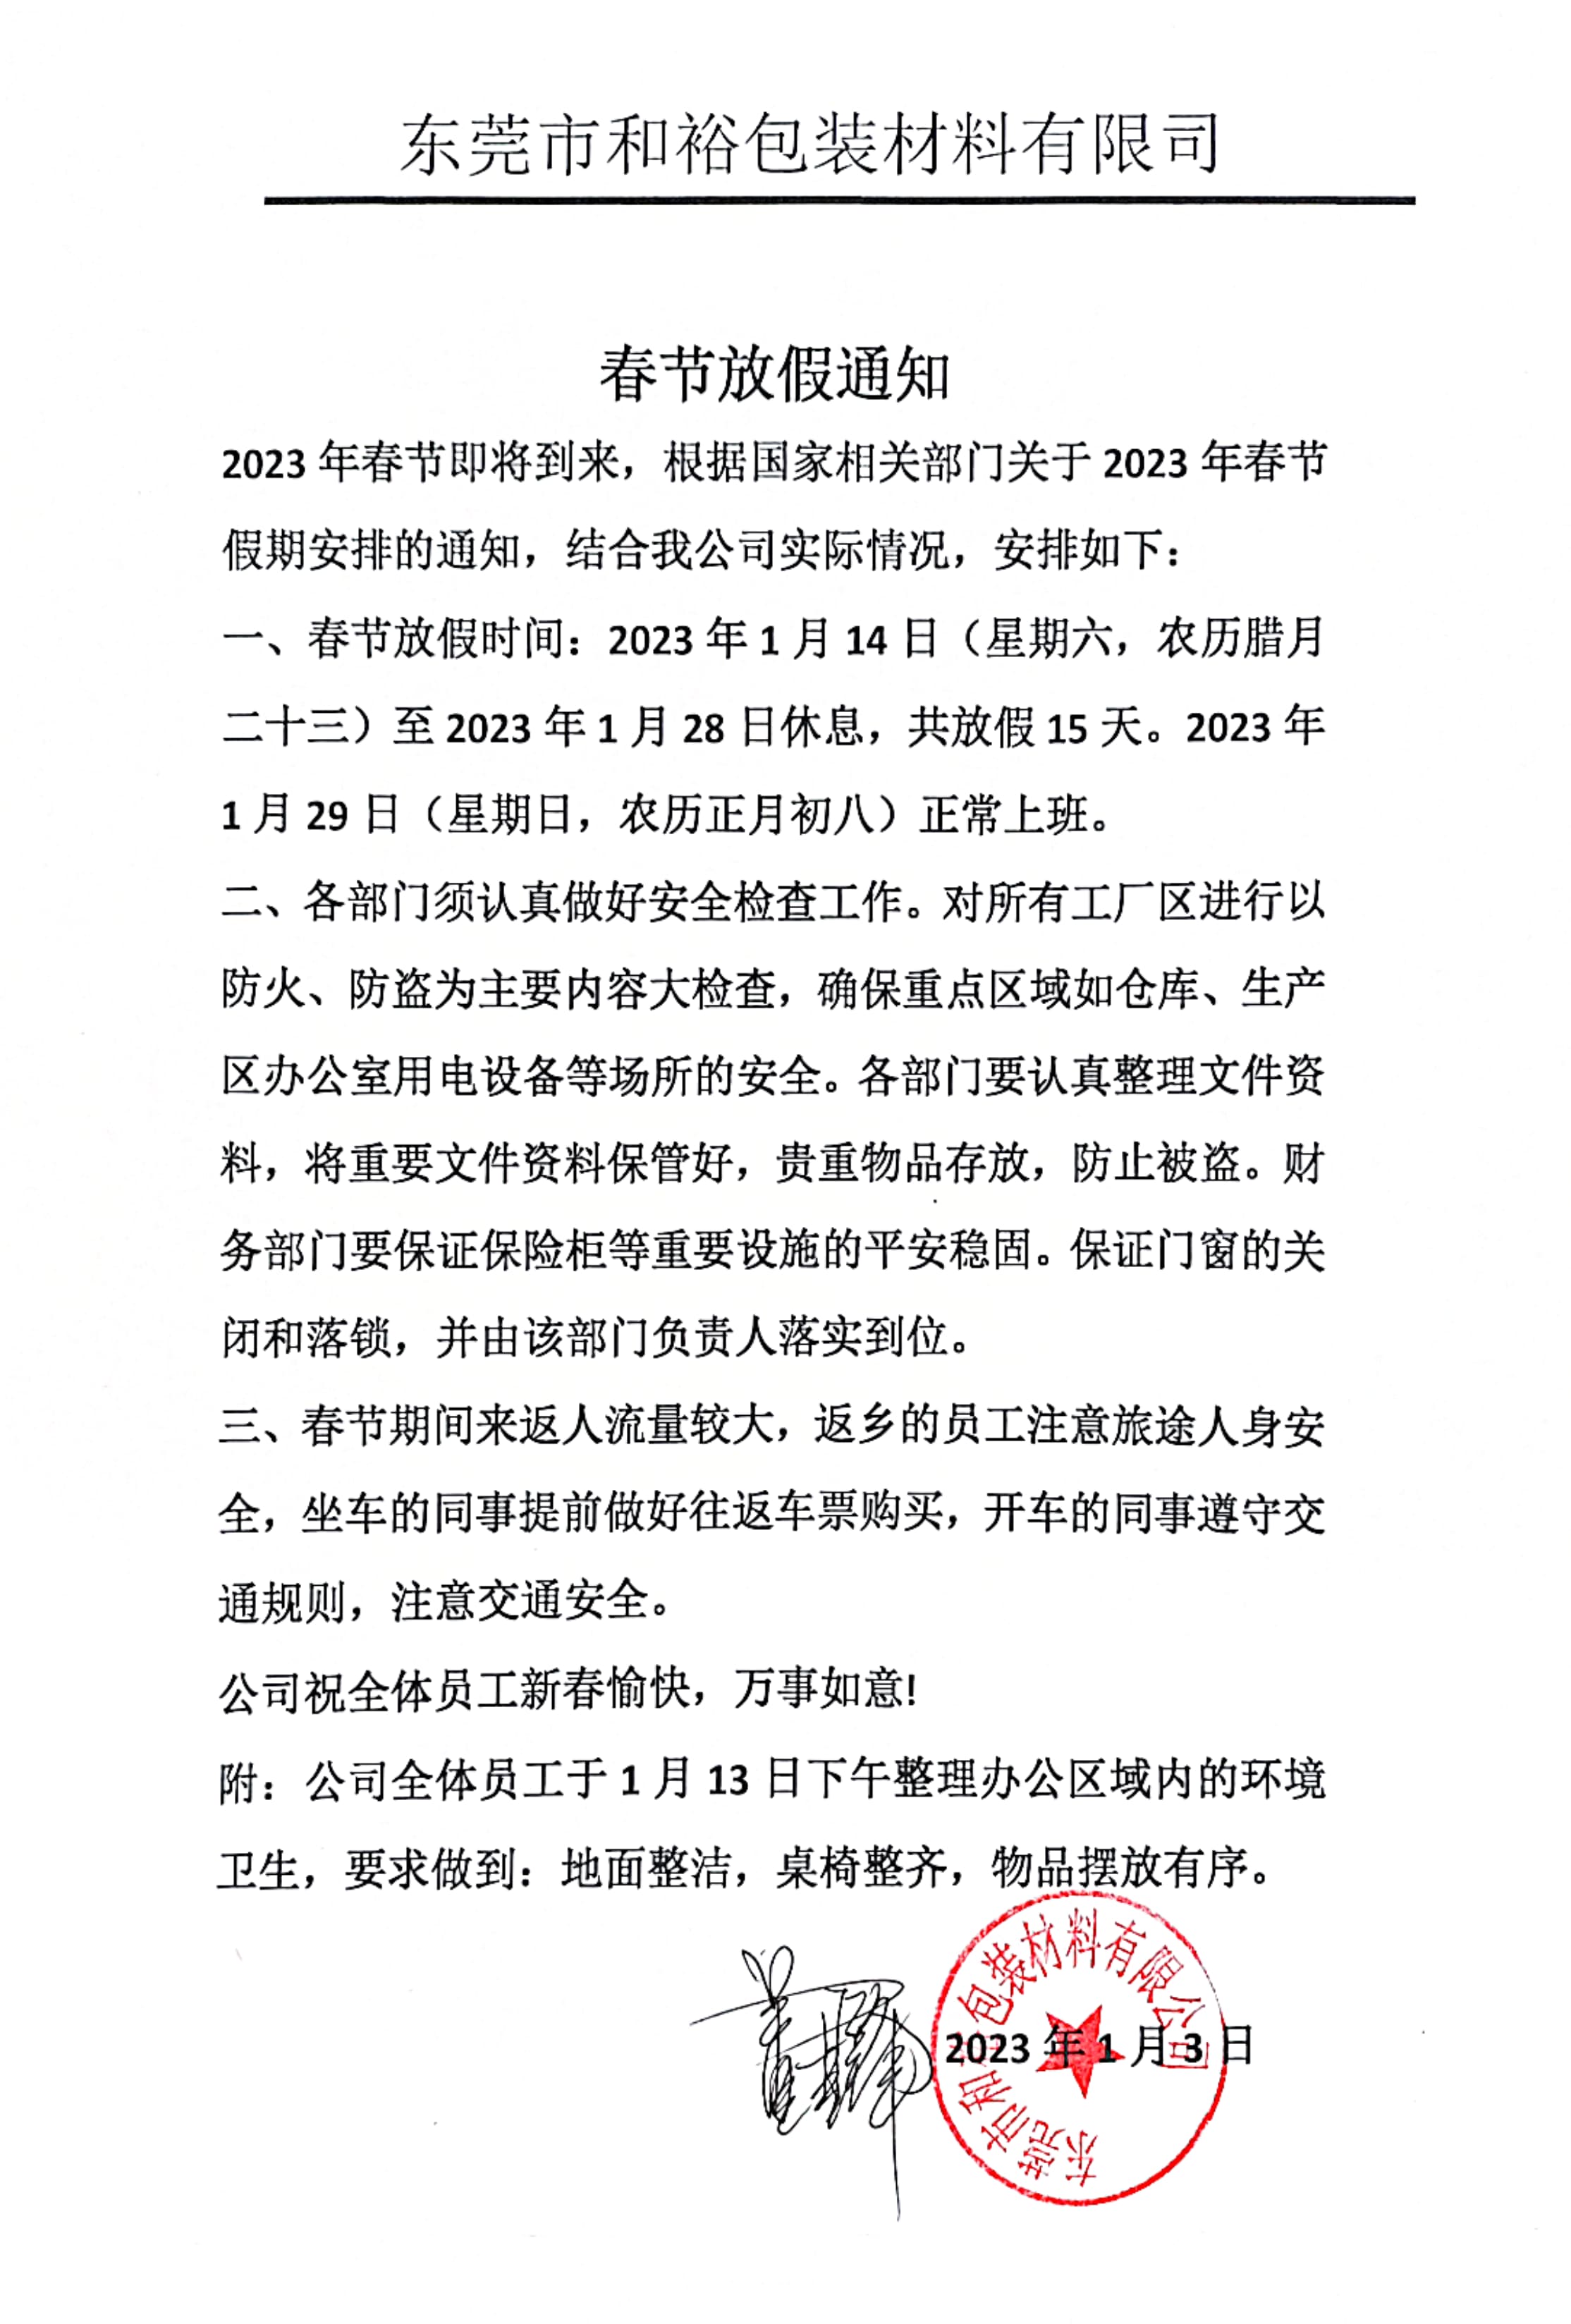 广西2023年和裕包装春节放假通知